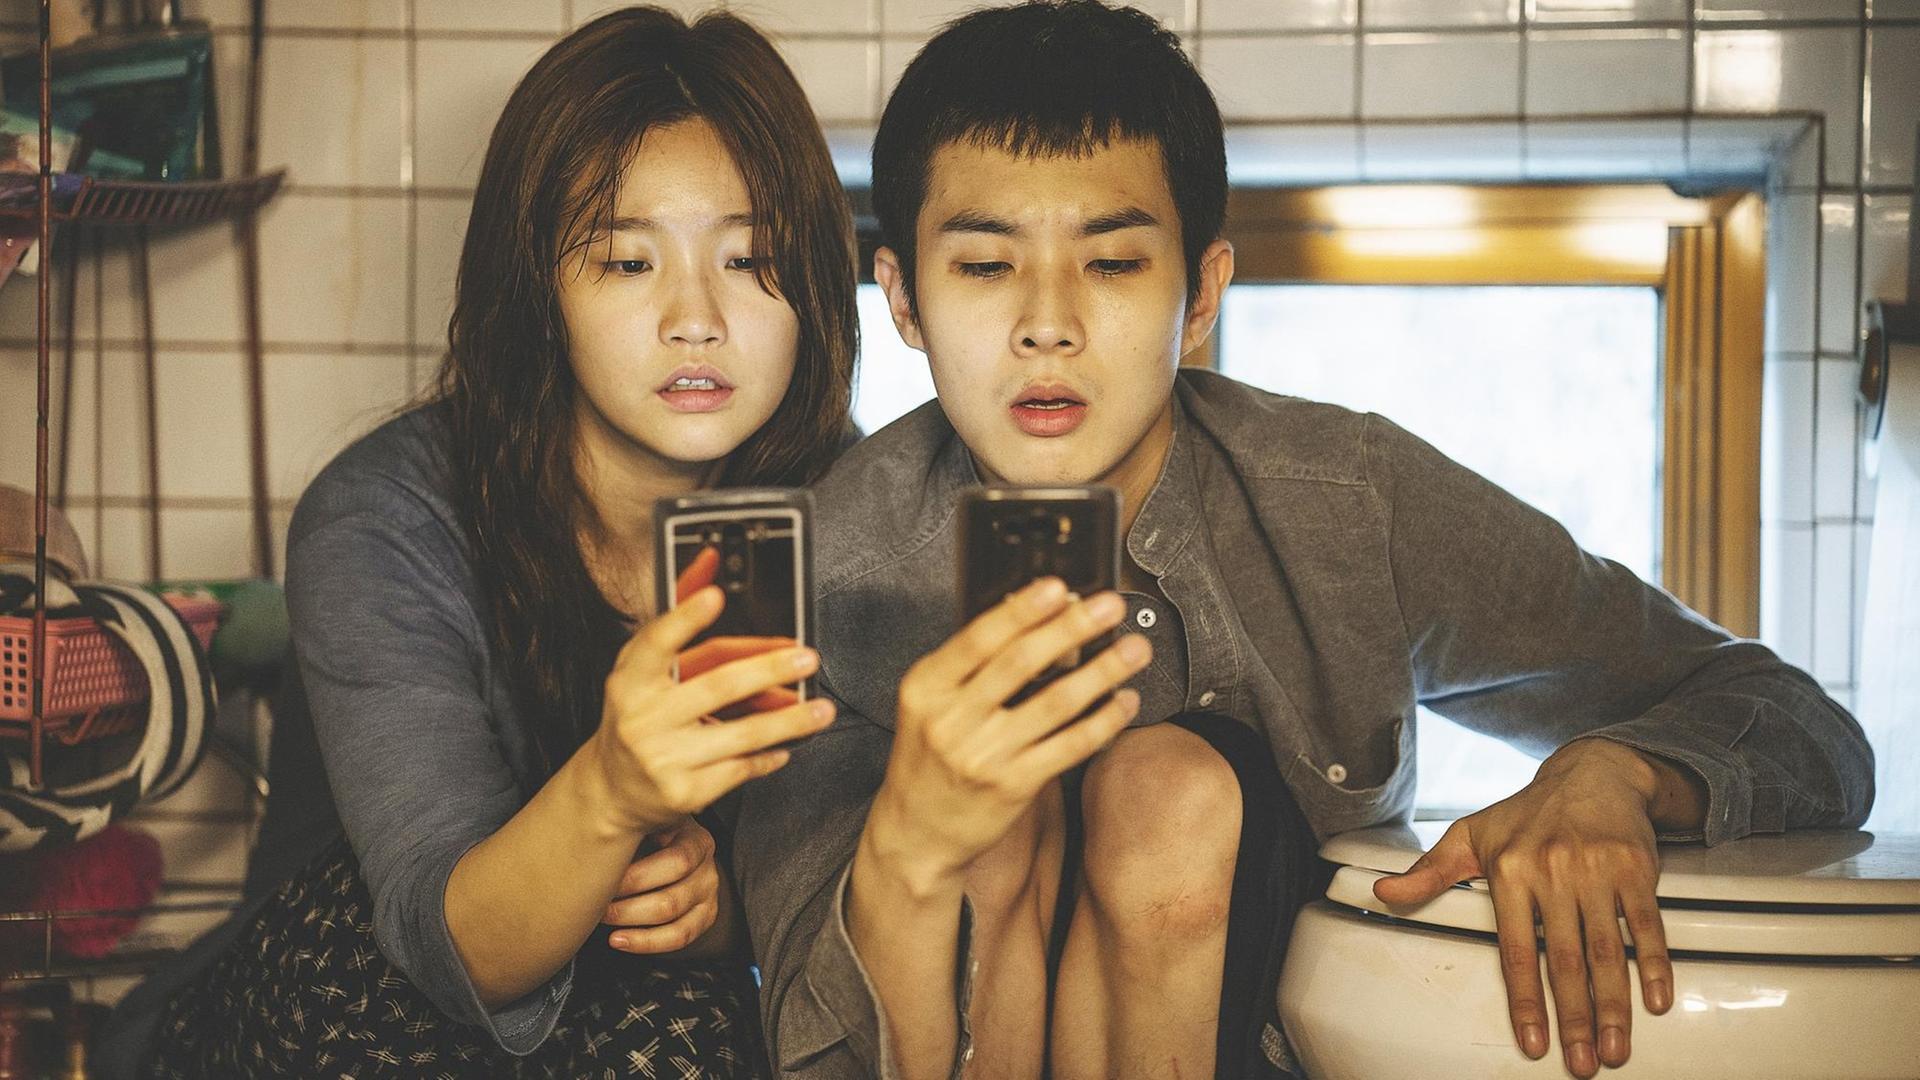 Die Darsteller Park So-dam und Choi Woo-shik in Bong Joon-hos Spielfilm "Parasite" starren auf Smartphones